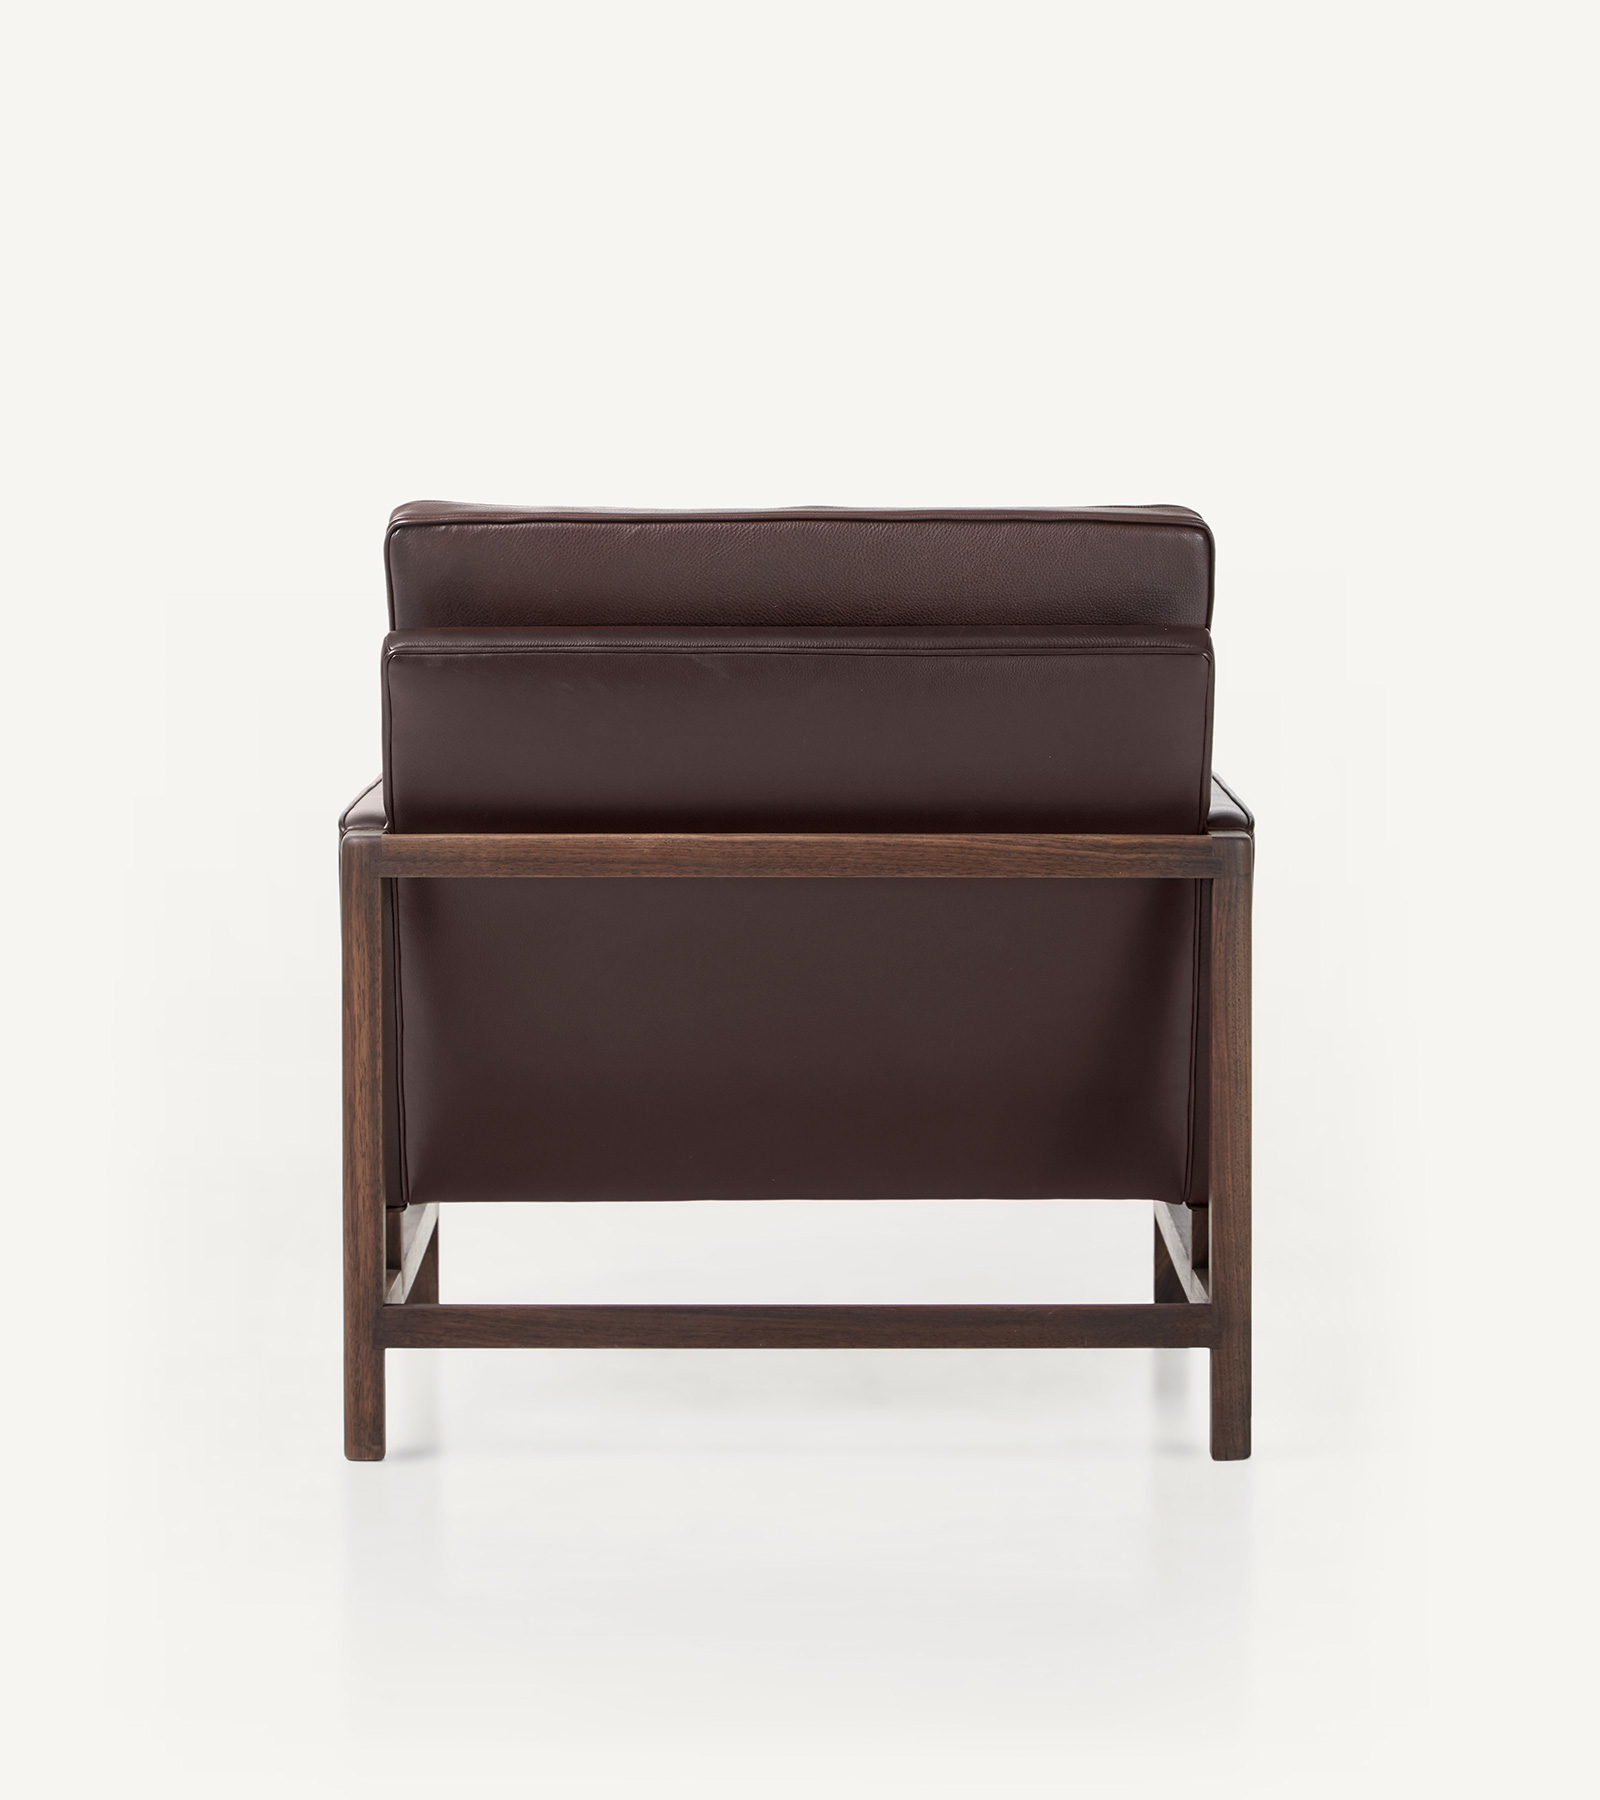 TinnappleMetz-bassamfellows-Wood-Frame-Lounge-Chair-04